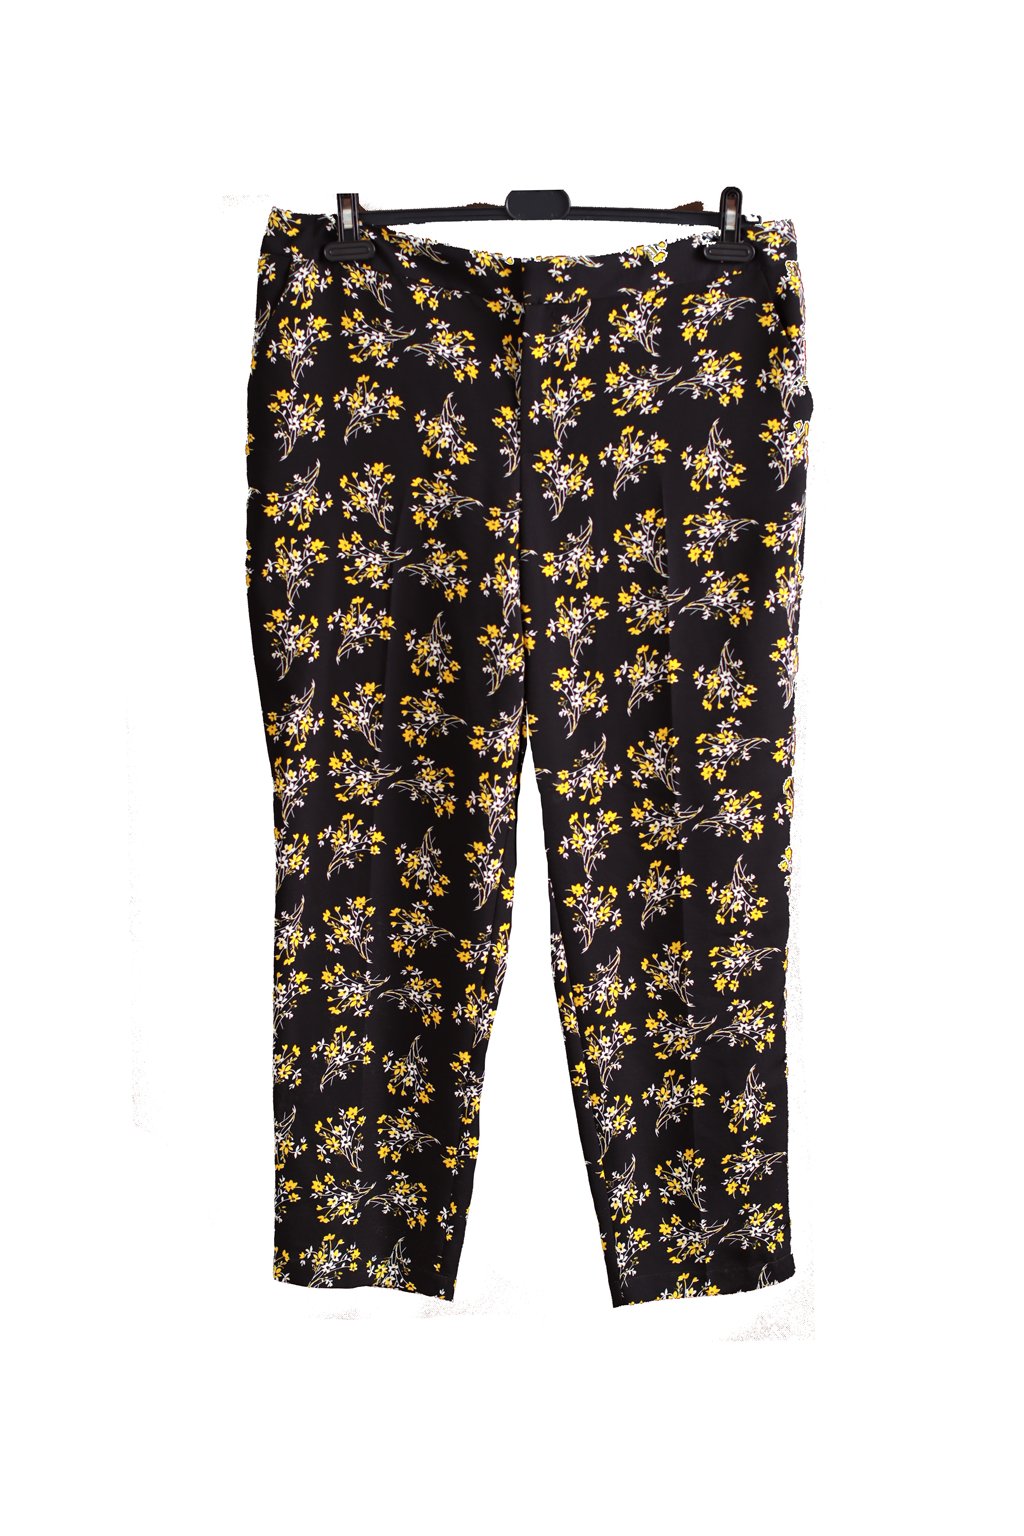 Dámské černo-bílo-žluté vzorované lehké kalhoty / Papaya / XXL (46) / ANGLIE